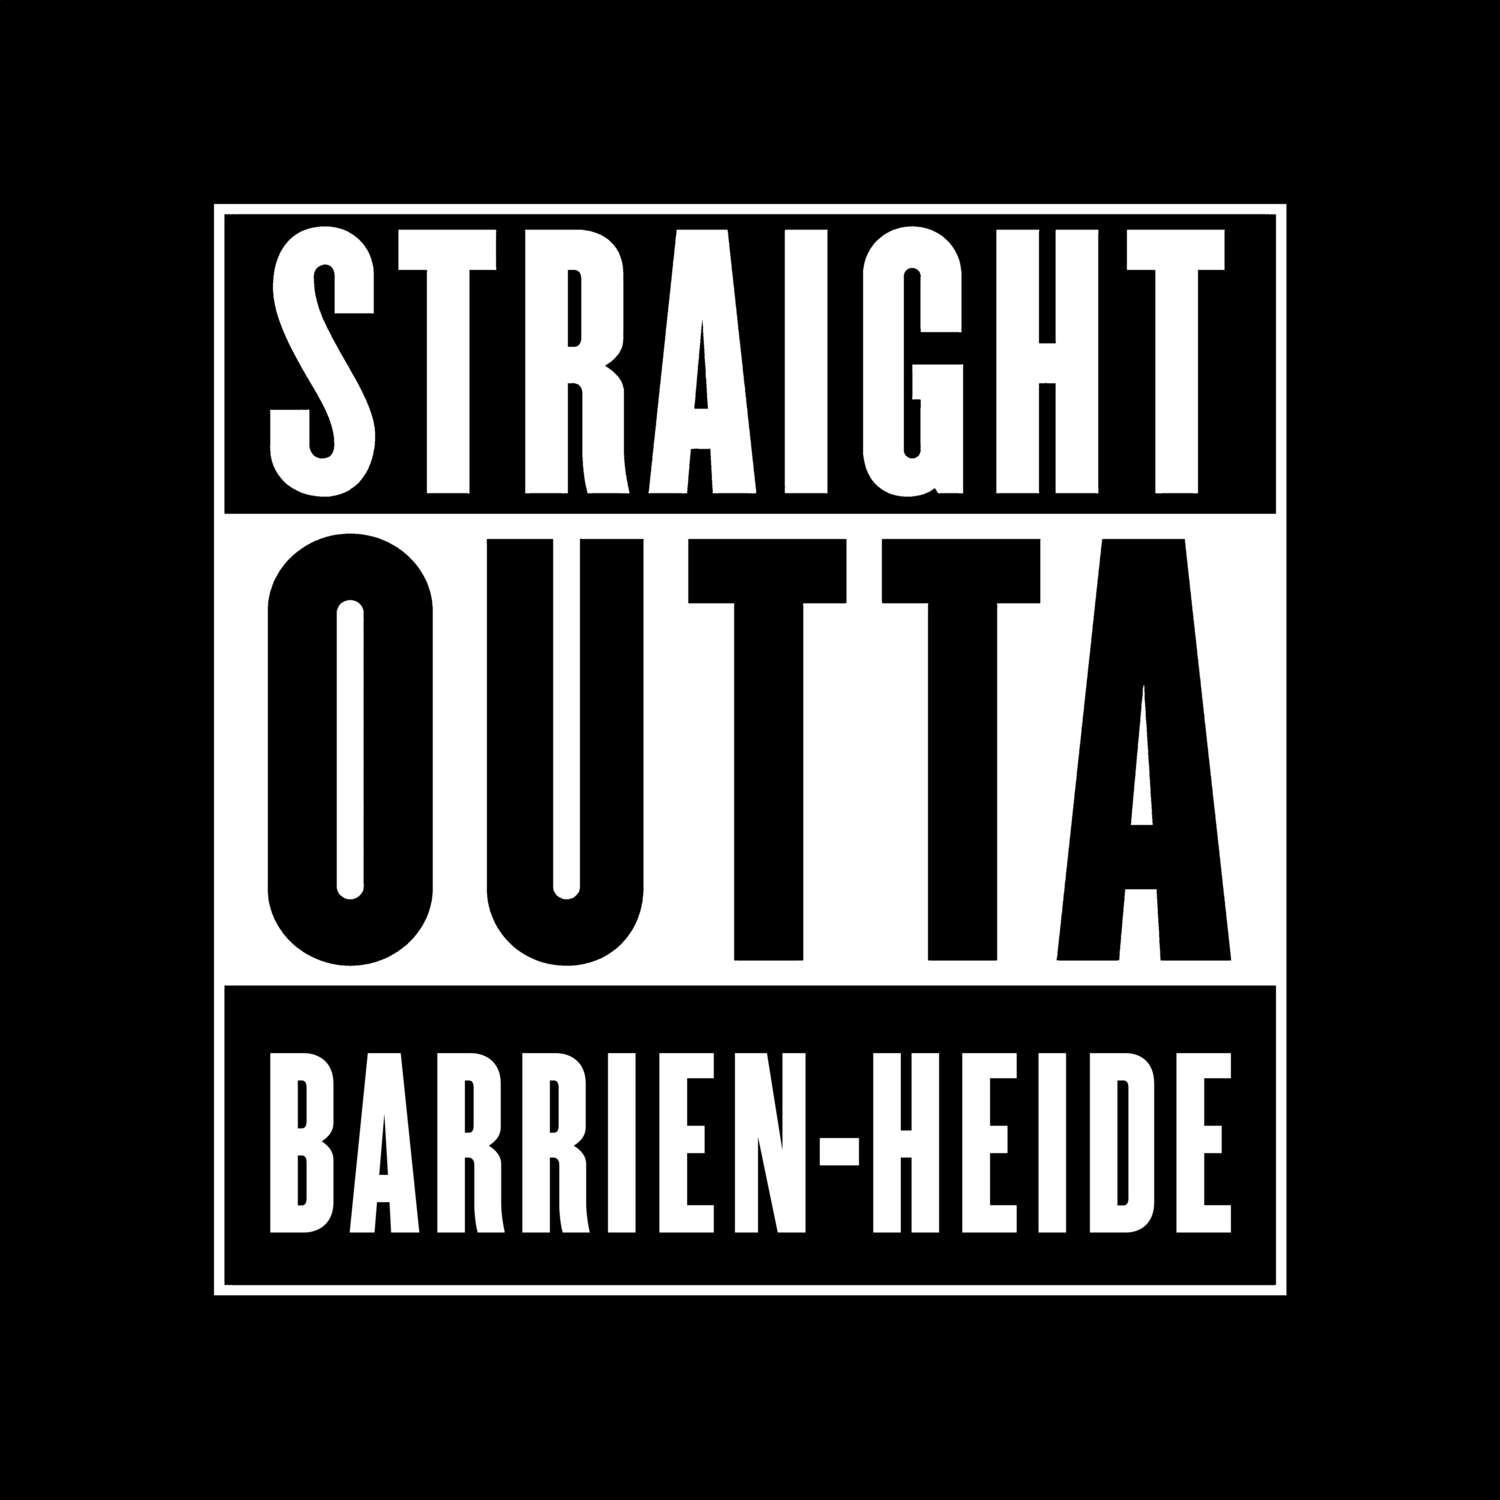 Barrien-Heide T-Shirt »Straight Outta«